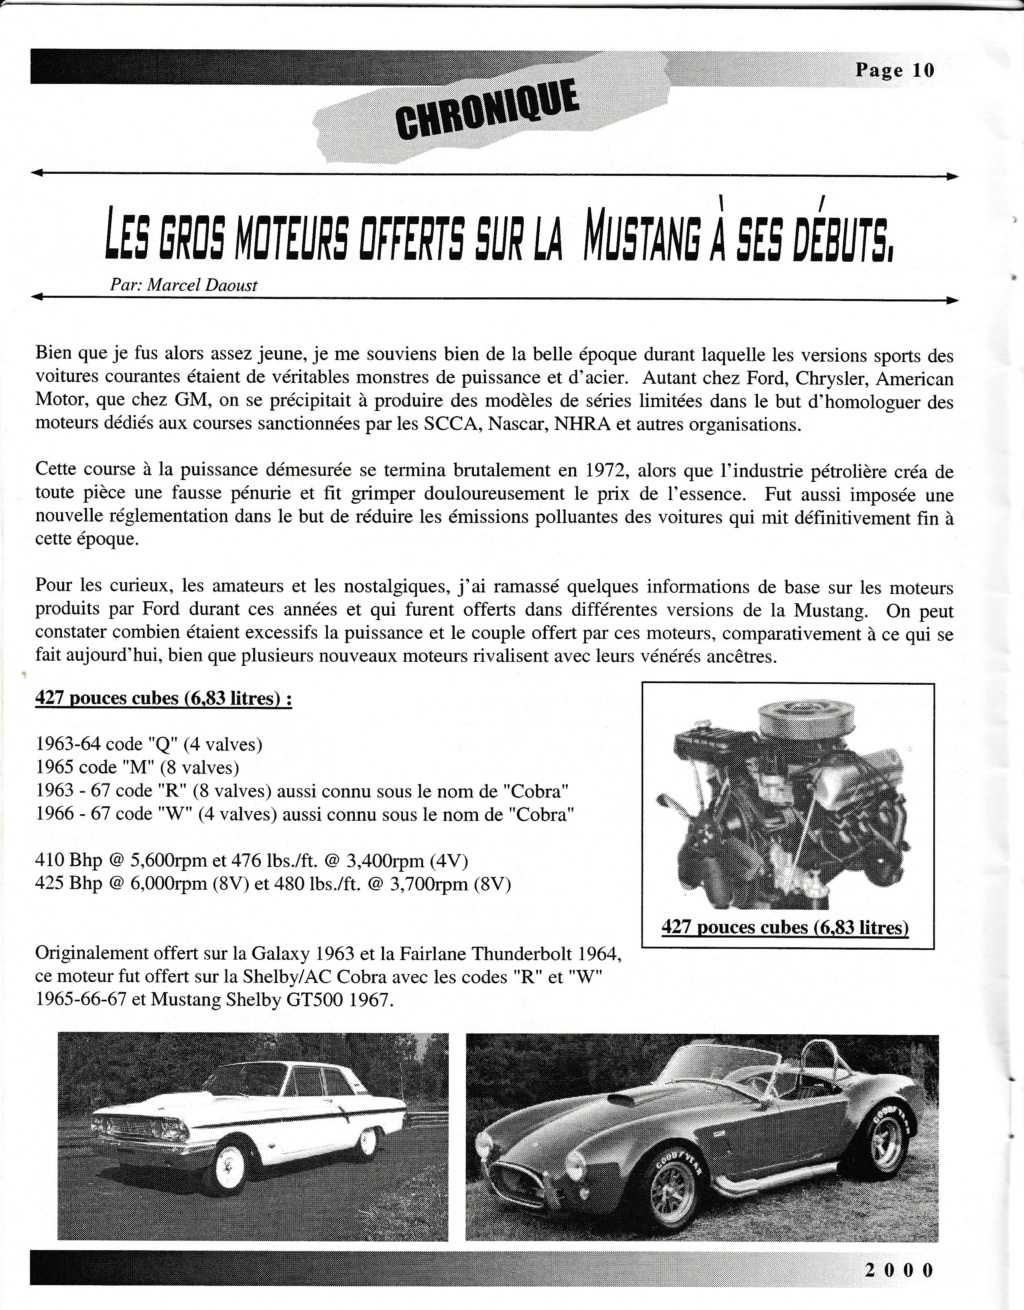 Montréal Mustang dans le temps! 1981 à aujourd'hui (Histoire en photos) - Page 9 Img_2521